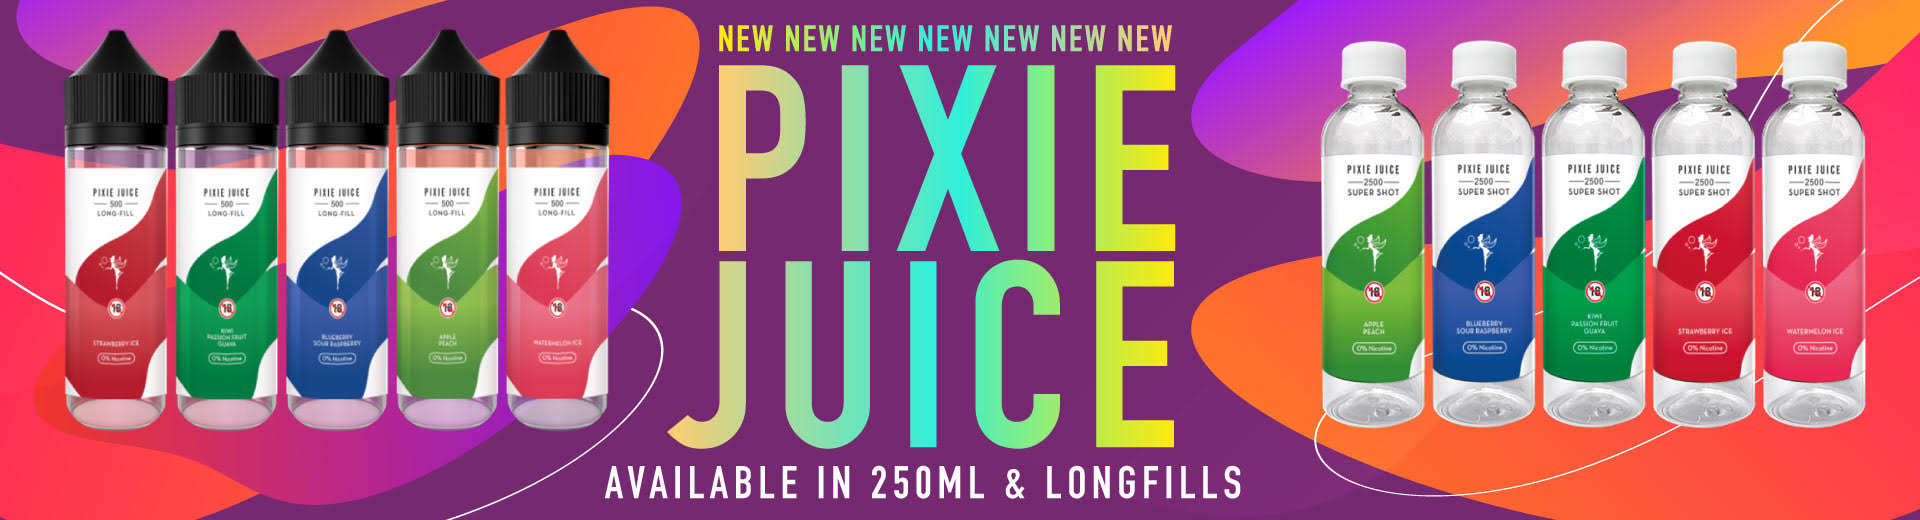 Pixie Juice